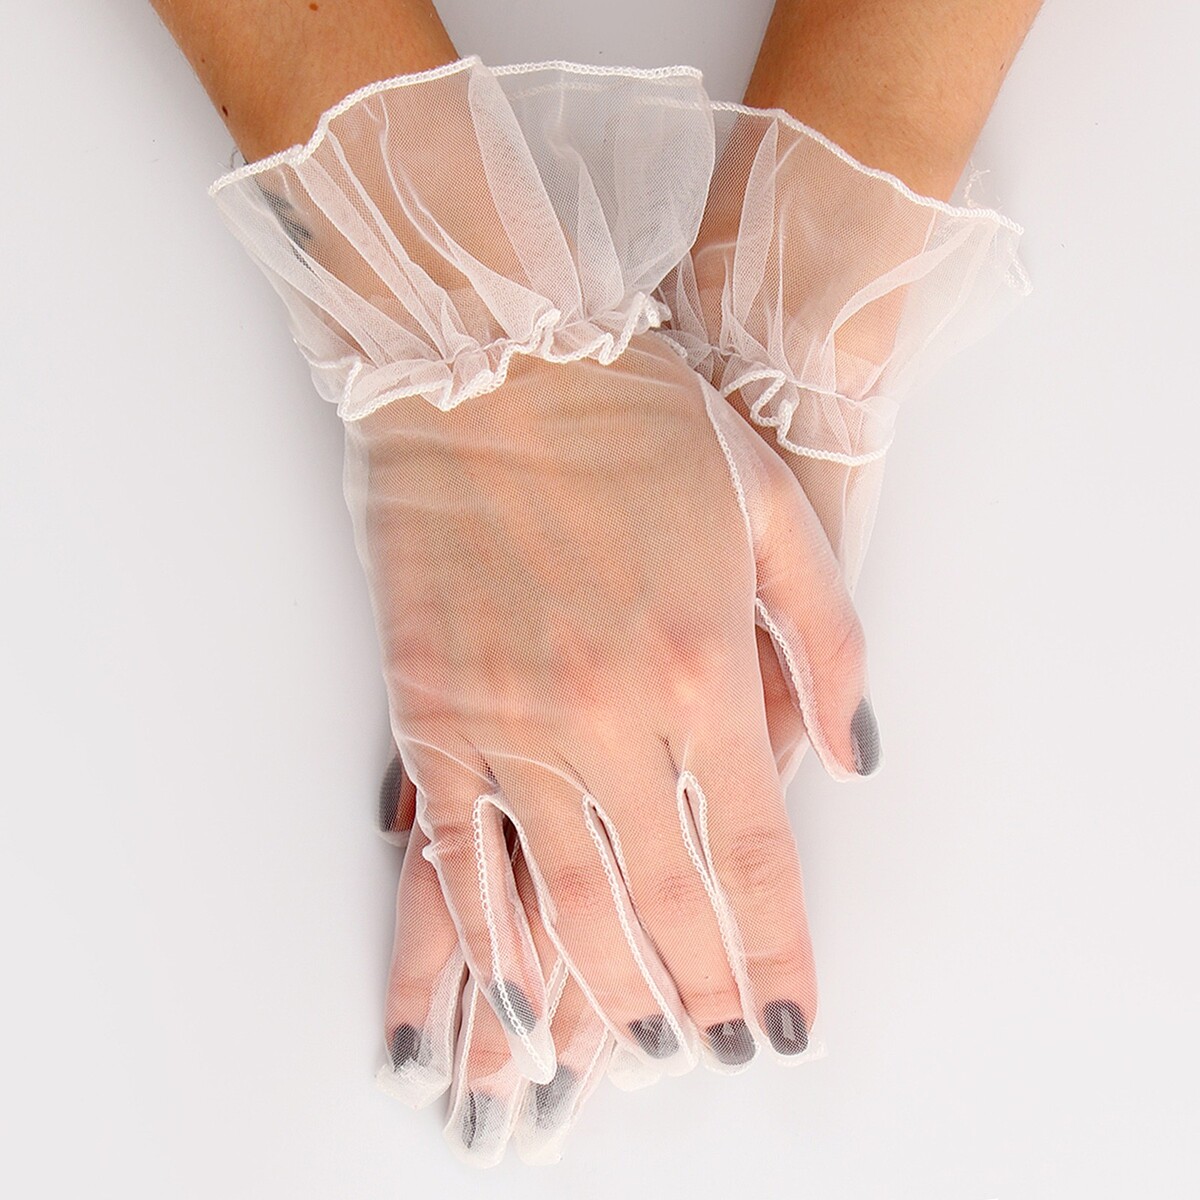 Карнавальный аксессуар - перчатки прозрачные с юбочкой, цвет белый карнавальный аксессуар перчатки прозрачные с юбочкой белый